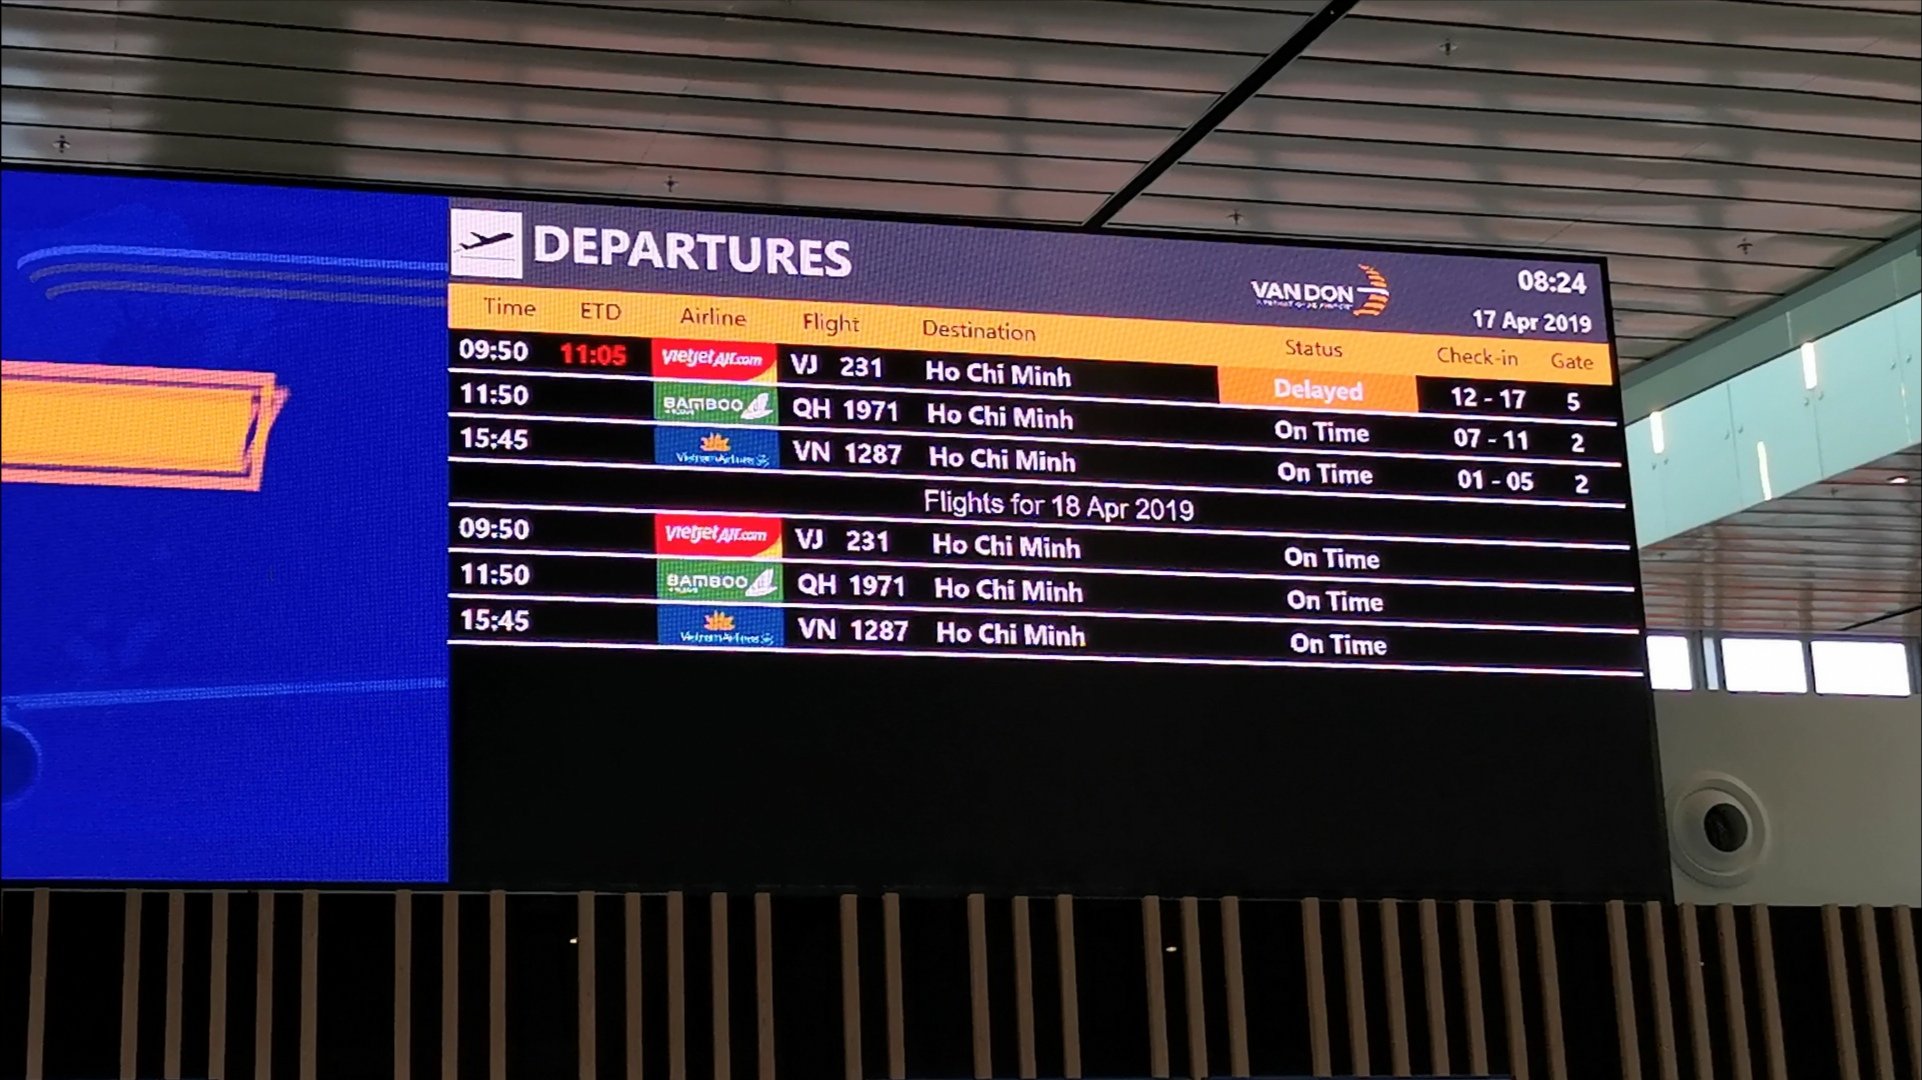 Cách đọc bảng điện thông báo trong sân bay để biết thông tin chuyến bay